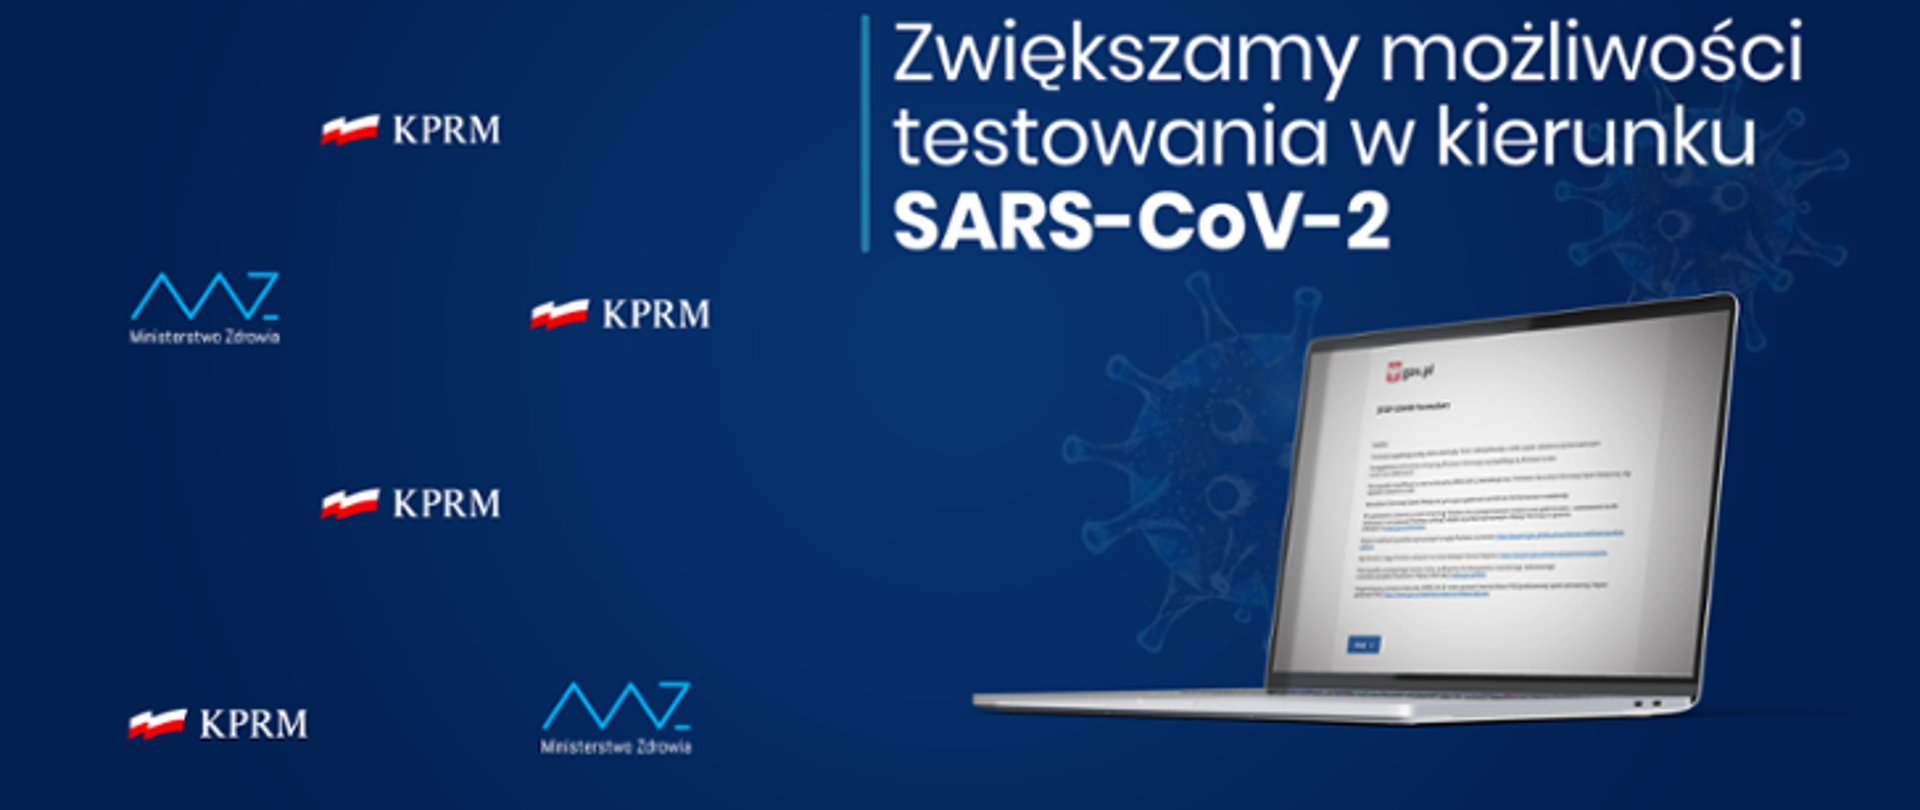 Zwiększamy możliwość testowania w kierunku SARS-CoV-2